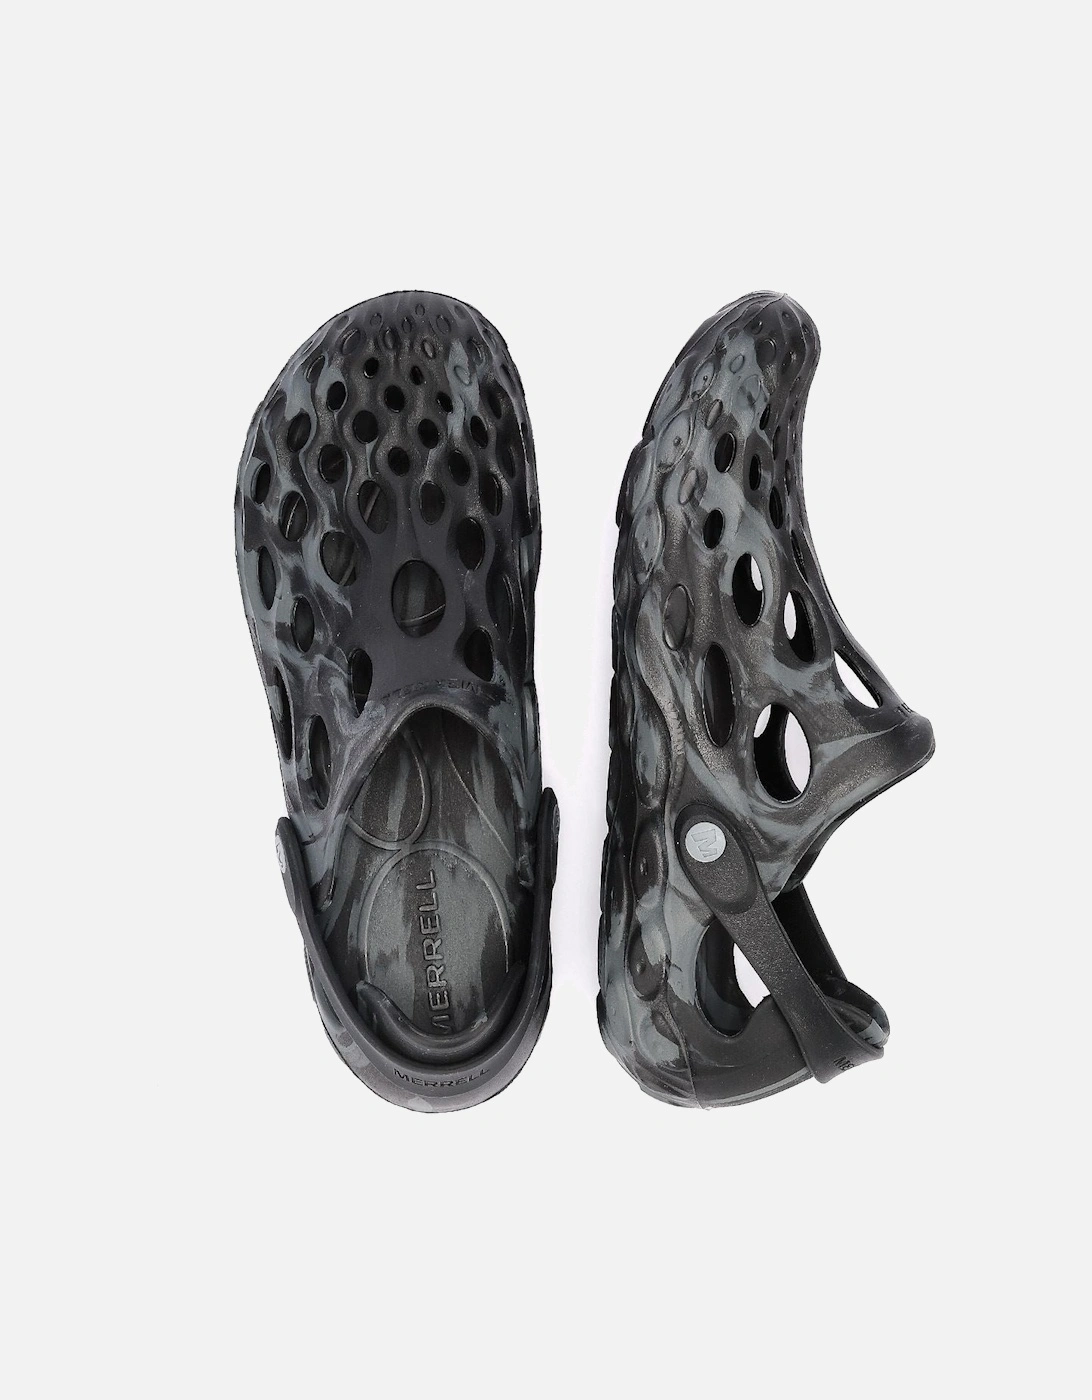 Hydro Moc Men's Black Sandals